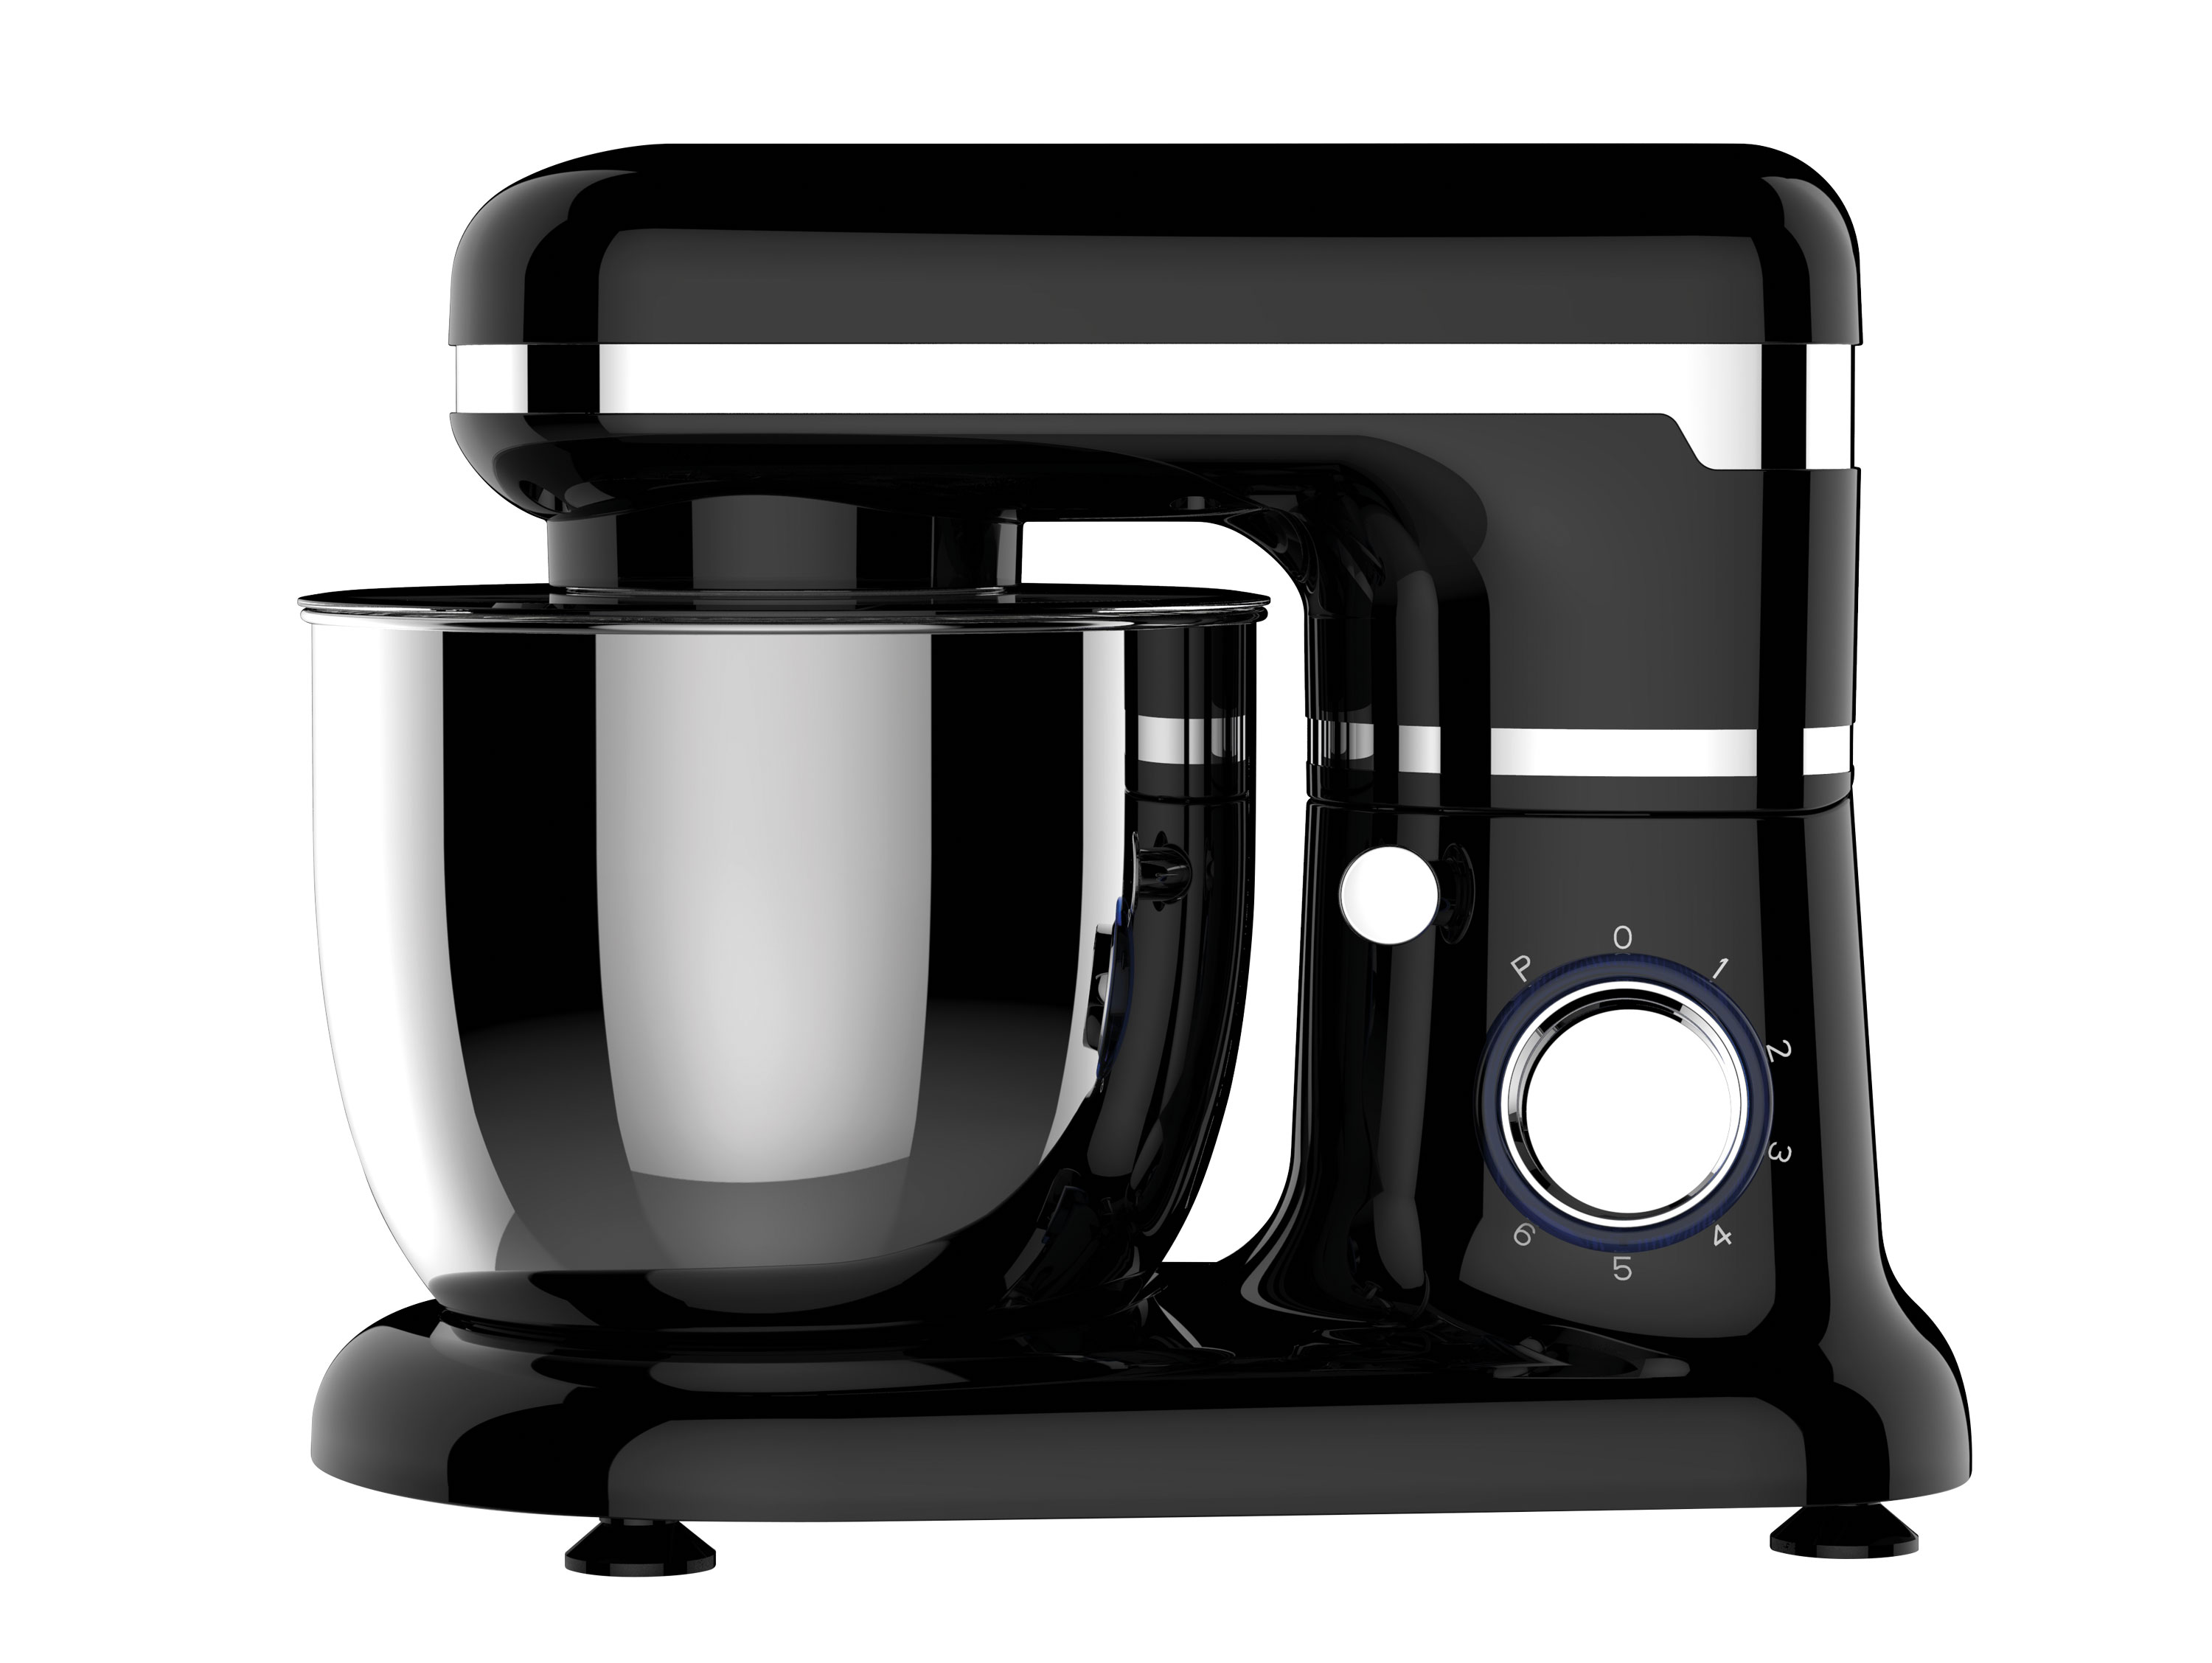 PURLINE Küchenmaschine mit Knetfunktion 1000W Schüssel 5L (1000 mit Watt) Küchenmaschine Schwarz